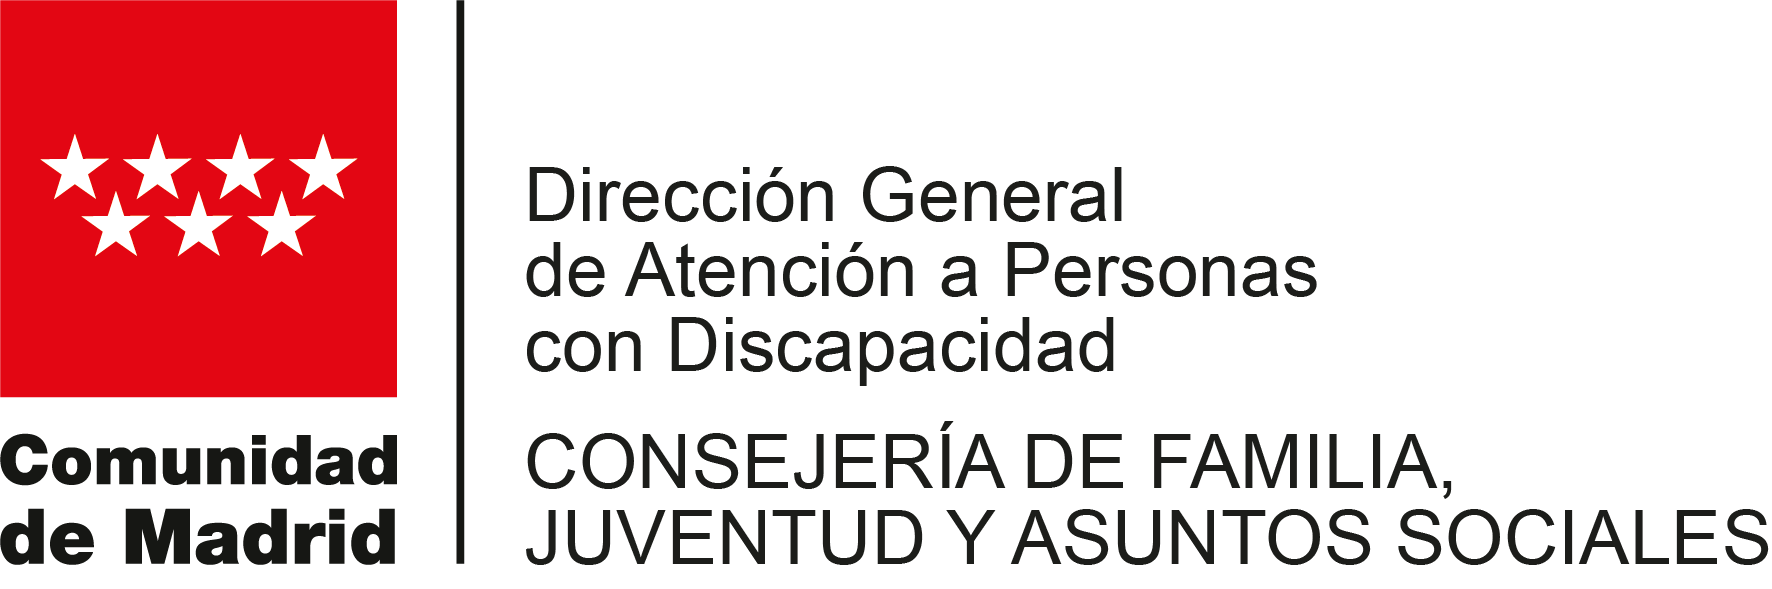 Atencion a Personas con Discapacidad Comunidad de Madrid